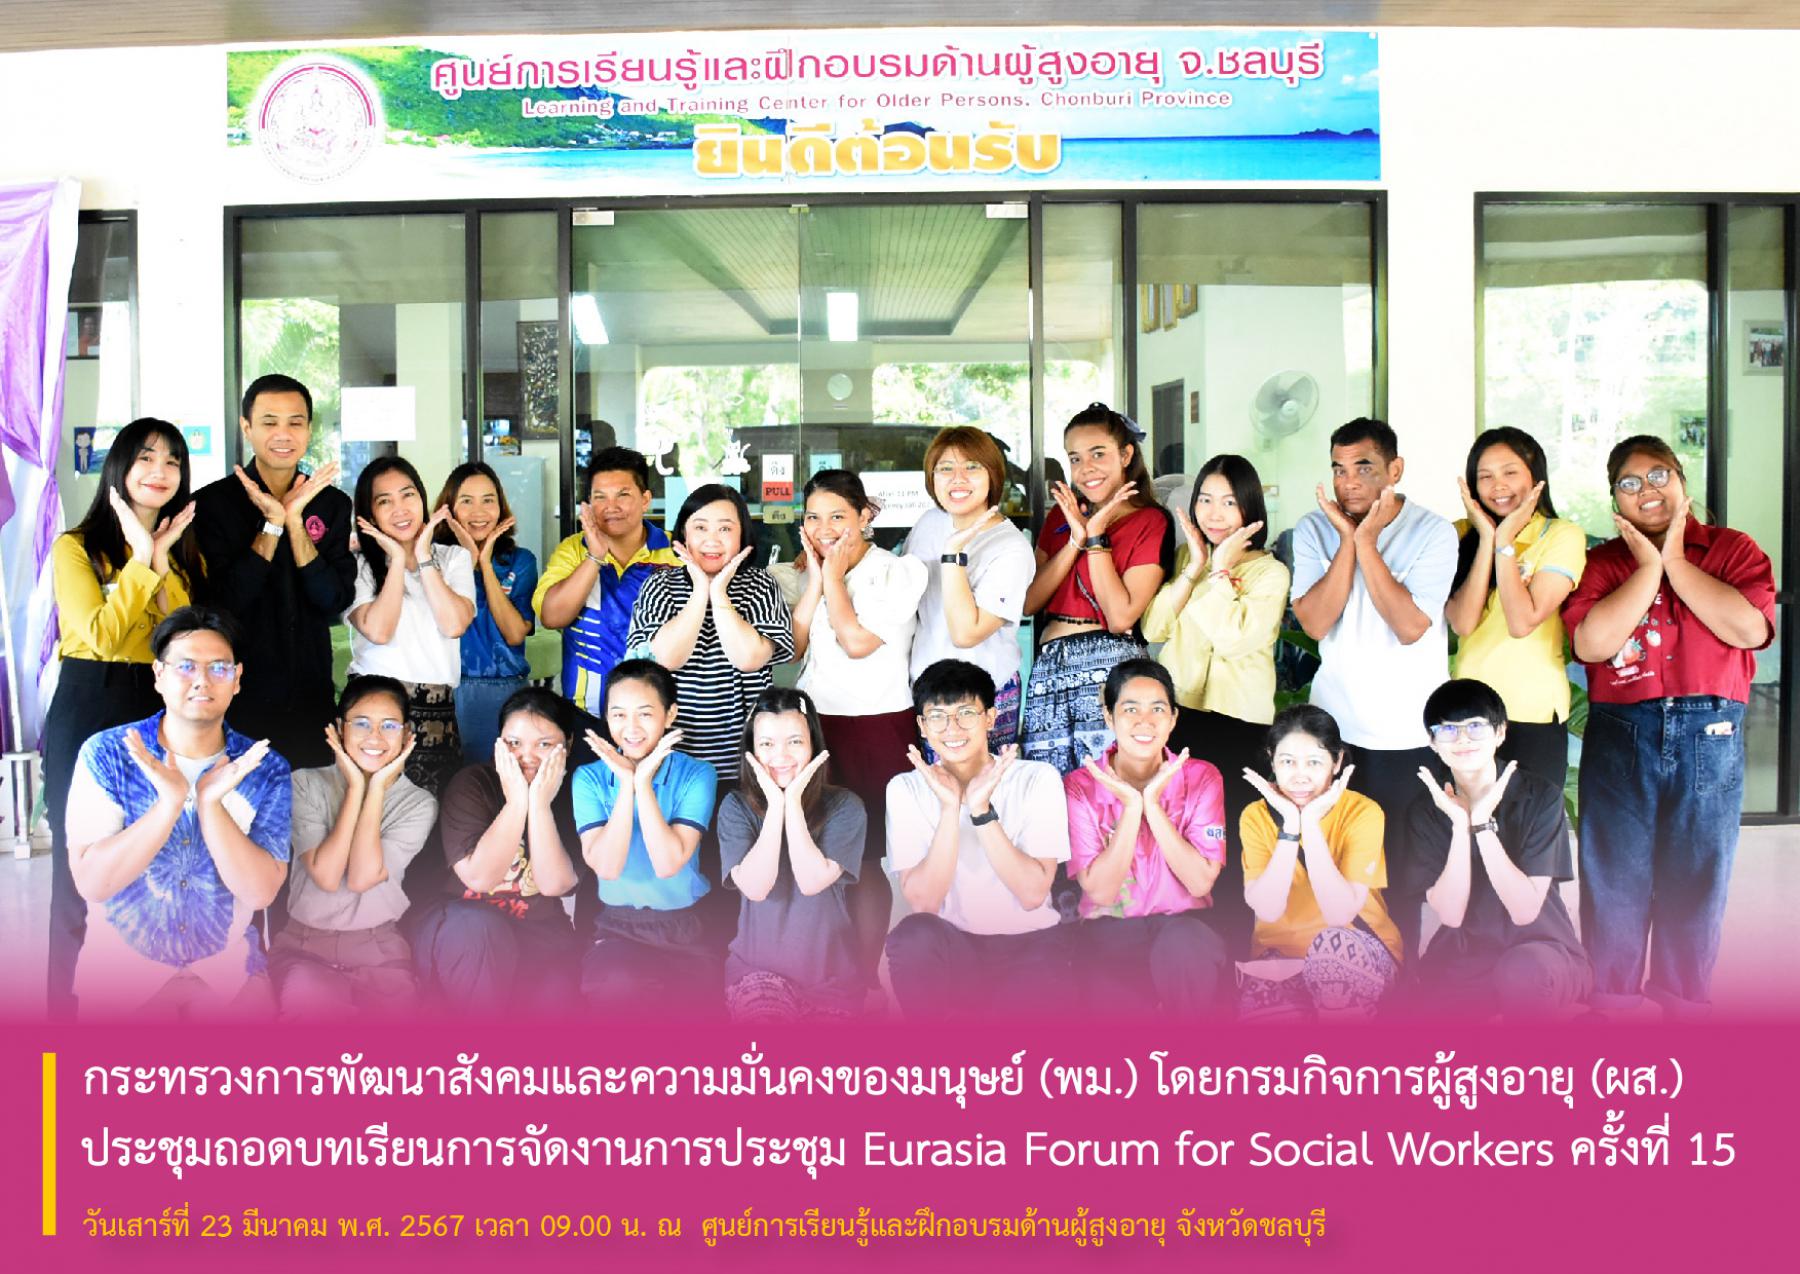 กระทรวงการพัฒนาสังคมและความมั่นคงของมนุษย์ (พม.) โดยกรมกิจการผู้สูงอายุ (ผส.) ประชุมถอดบทเรียนการจัดงานการประชุม Eurasia Forum for Social Workers ครั้งที่ 15